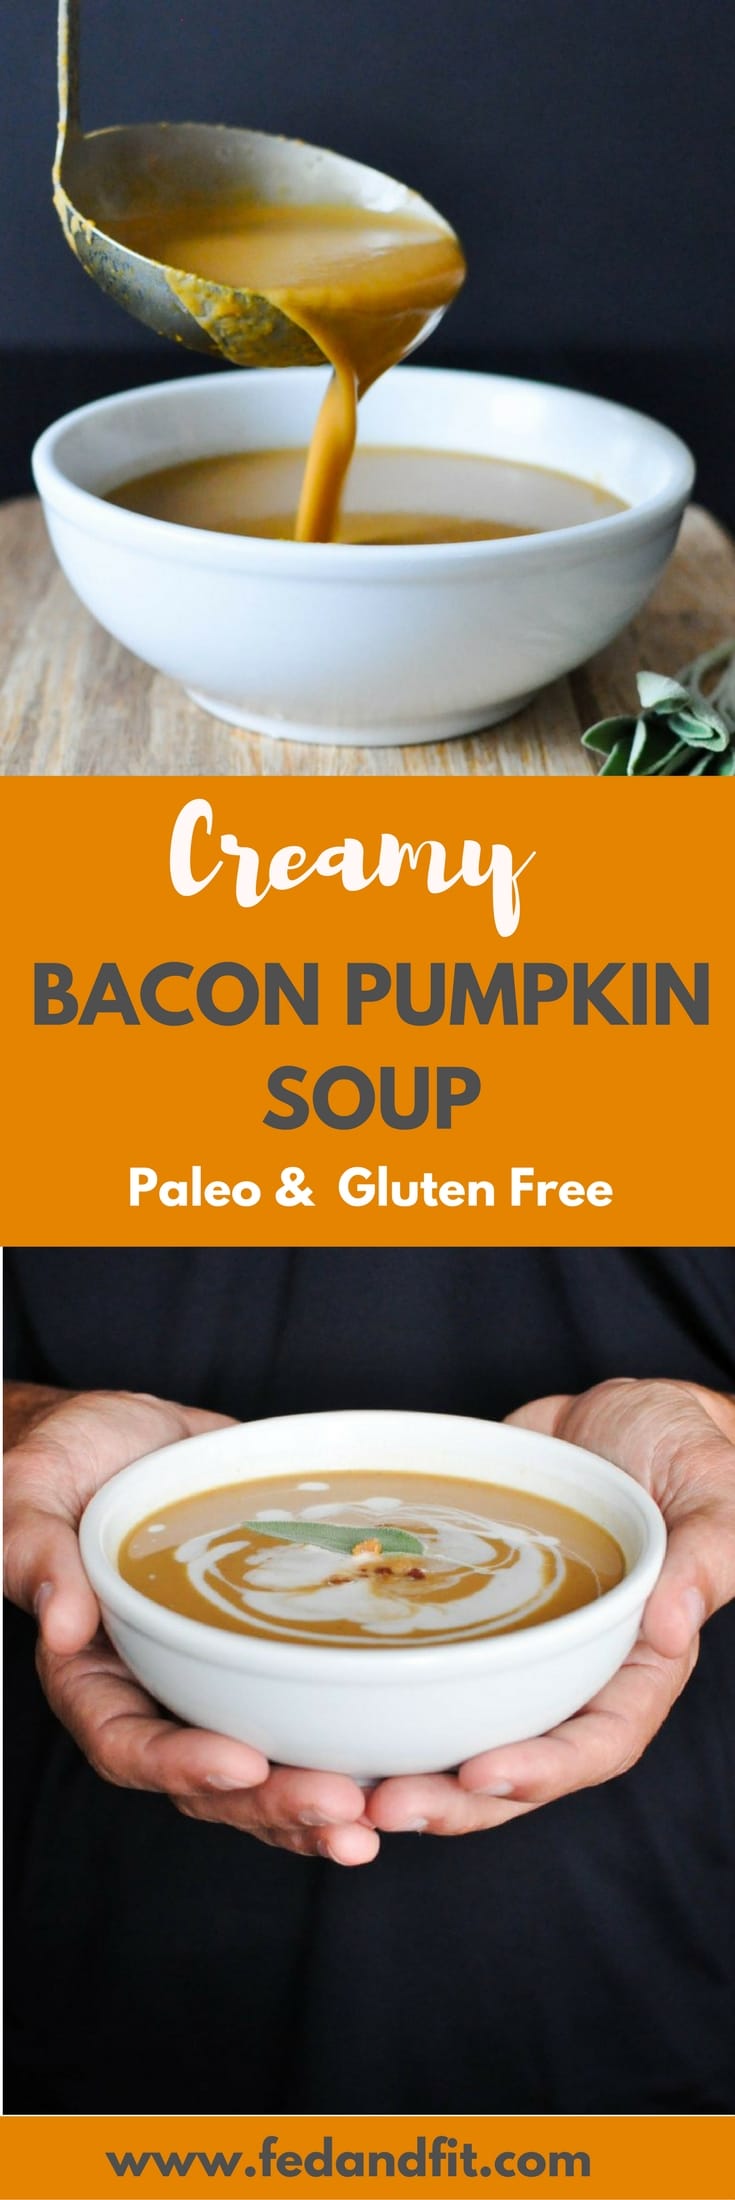 Denne Paleo Bacon Gresskar Suppe er helt meieri gratis og laget kremet med kokosmelk. Det er det perfekte sunne og trøstende vintermåltidet som fortsatt føles overbærende!